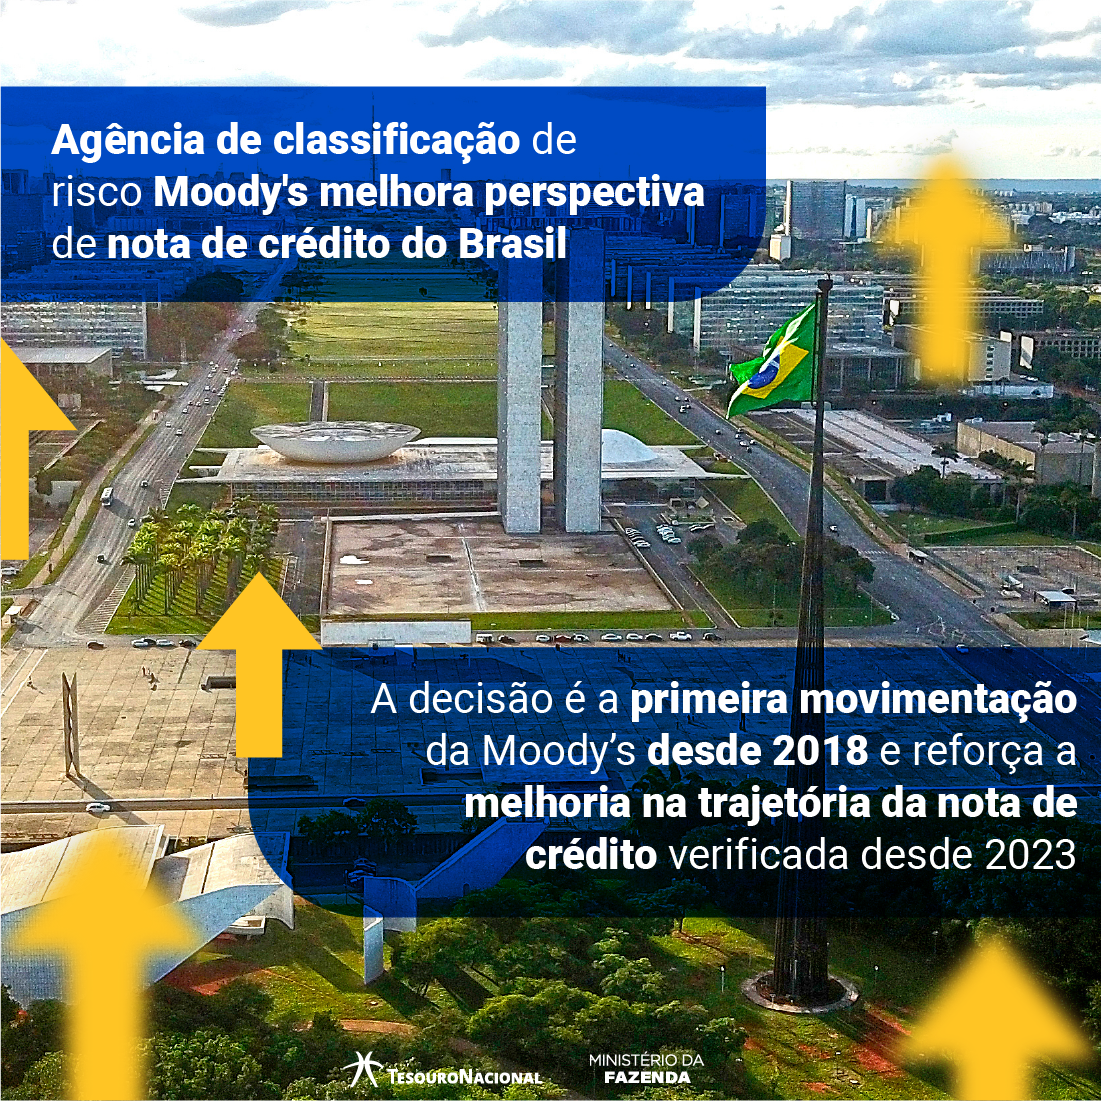 Alteração da perspectiva de crédito do Brasil - Agência Moody's